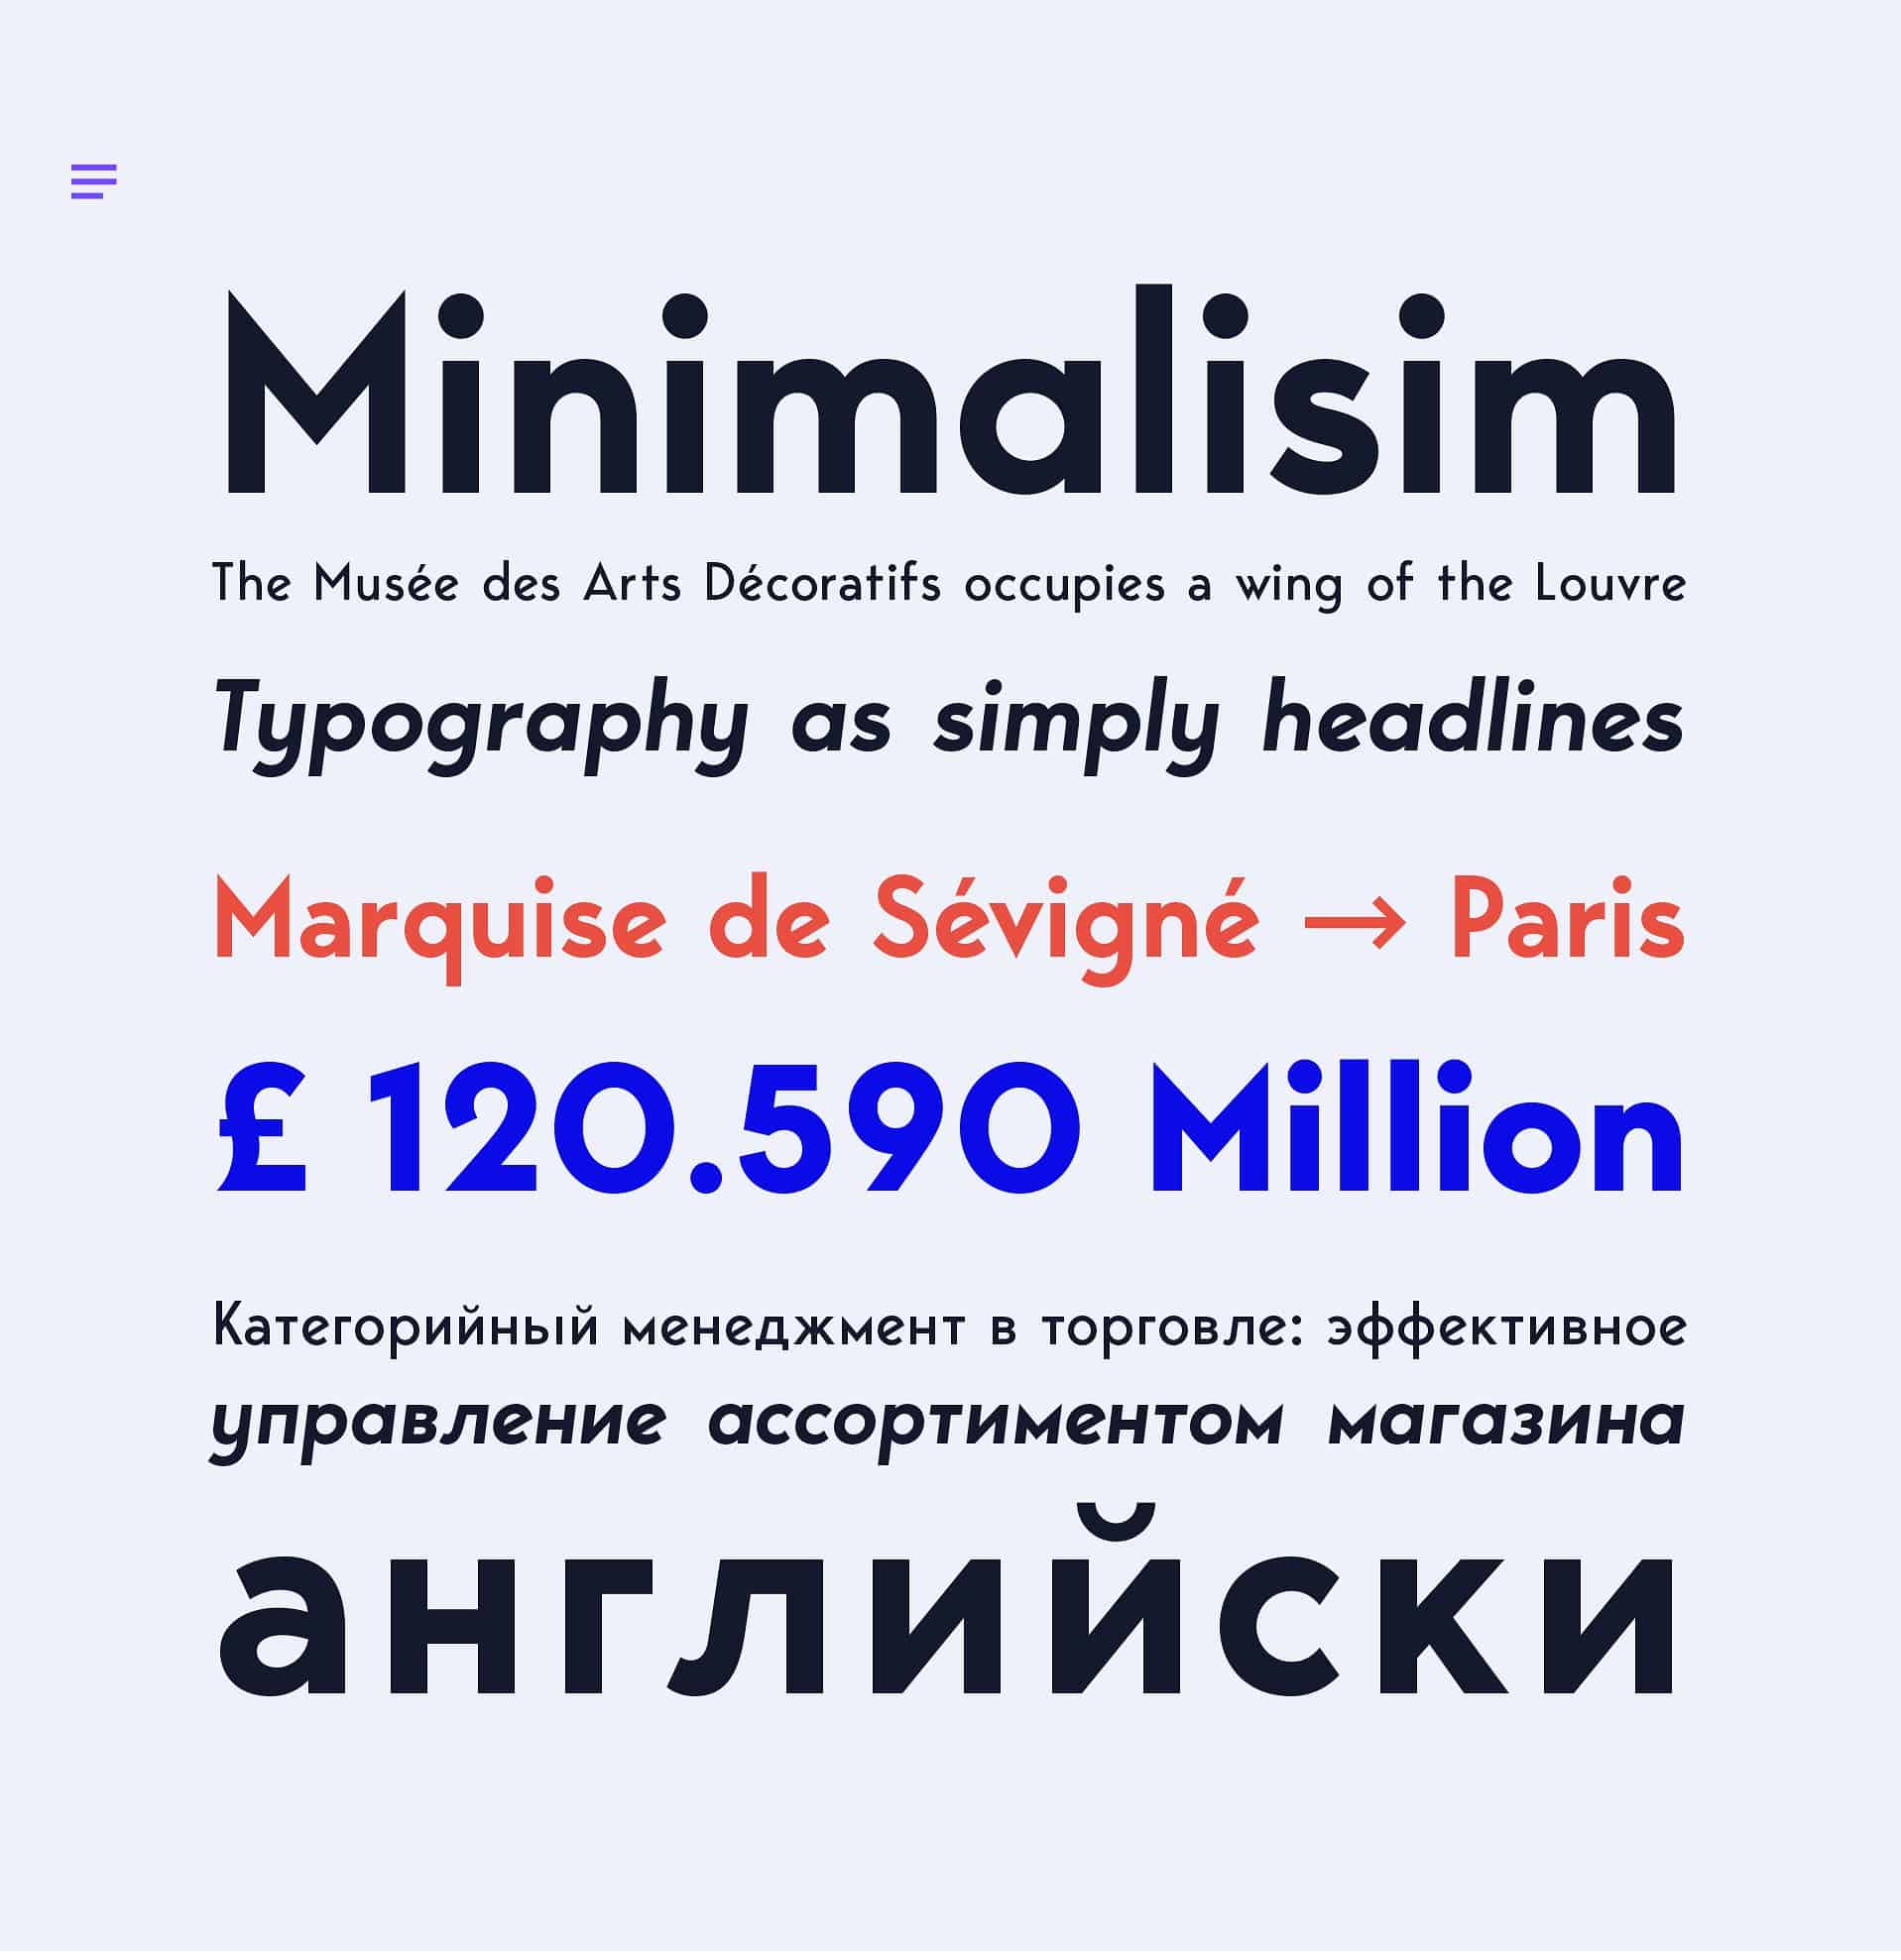 Download George Sans Geometric font (typeface)